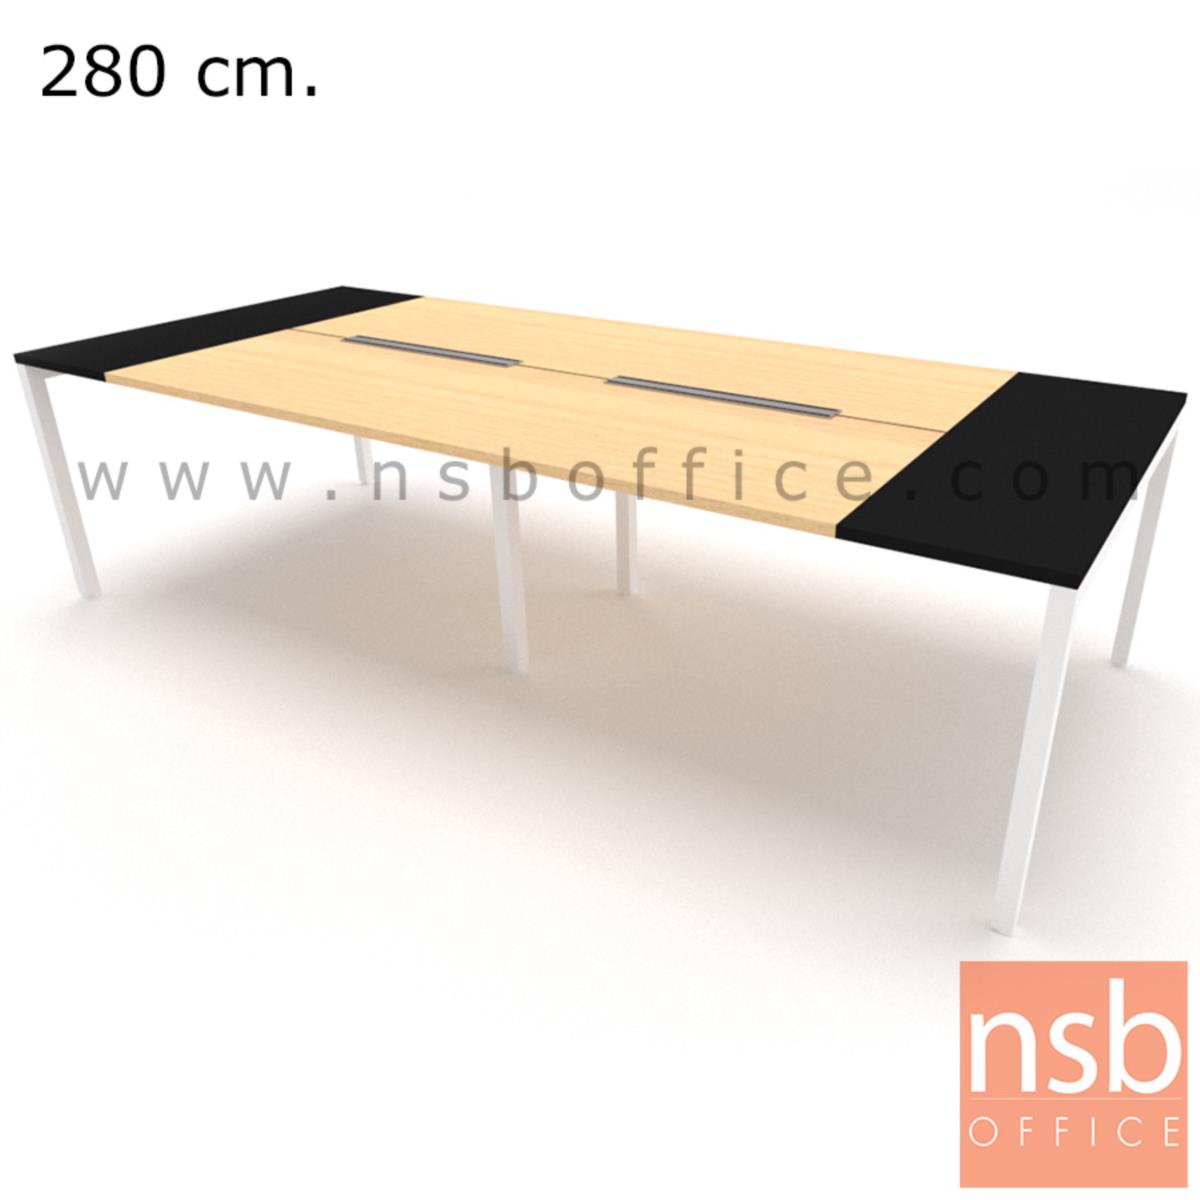 โต๊ะประชุมทรงสี่เหลี่ยม 120D cm. รุ่น NSB-SQ12  พร้อมรางไฟแบบสองทาง รหัส A24A006